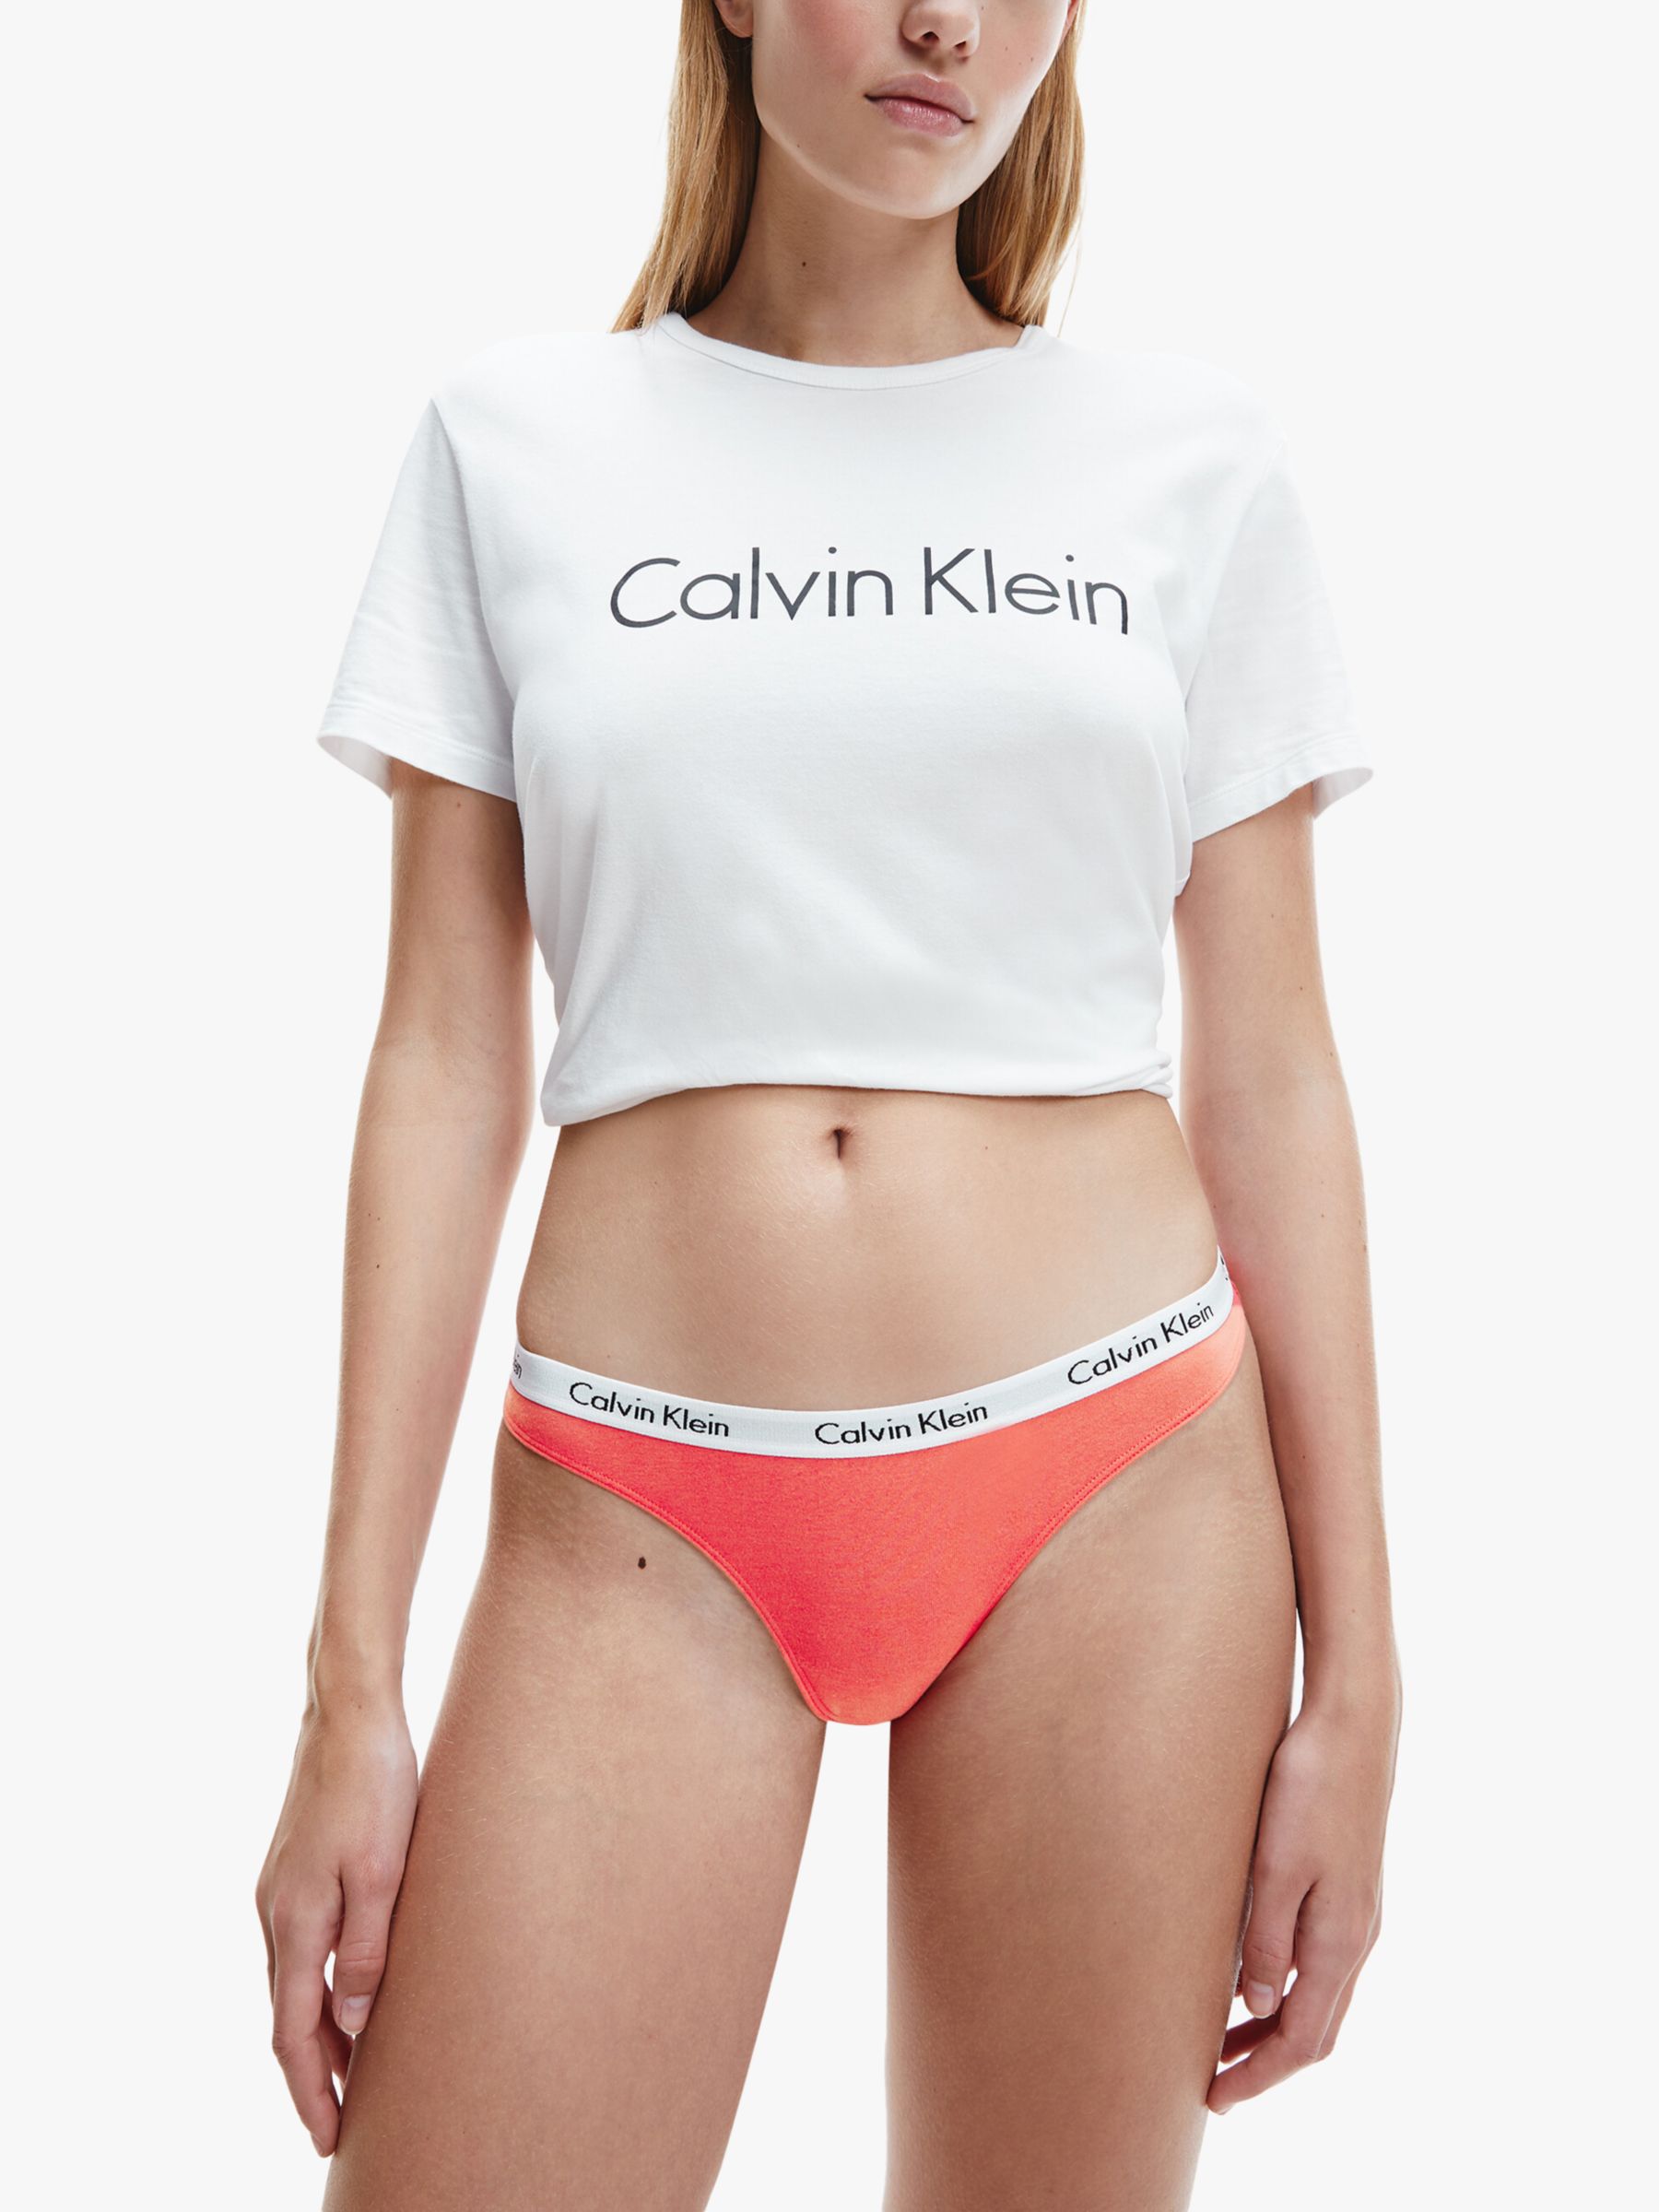 Calvin Klein Carousel Thong, Strawberry Shake